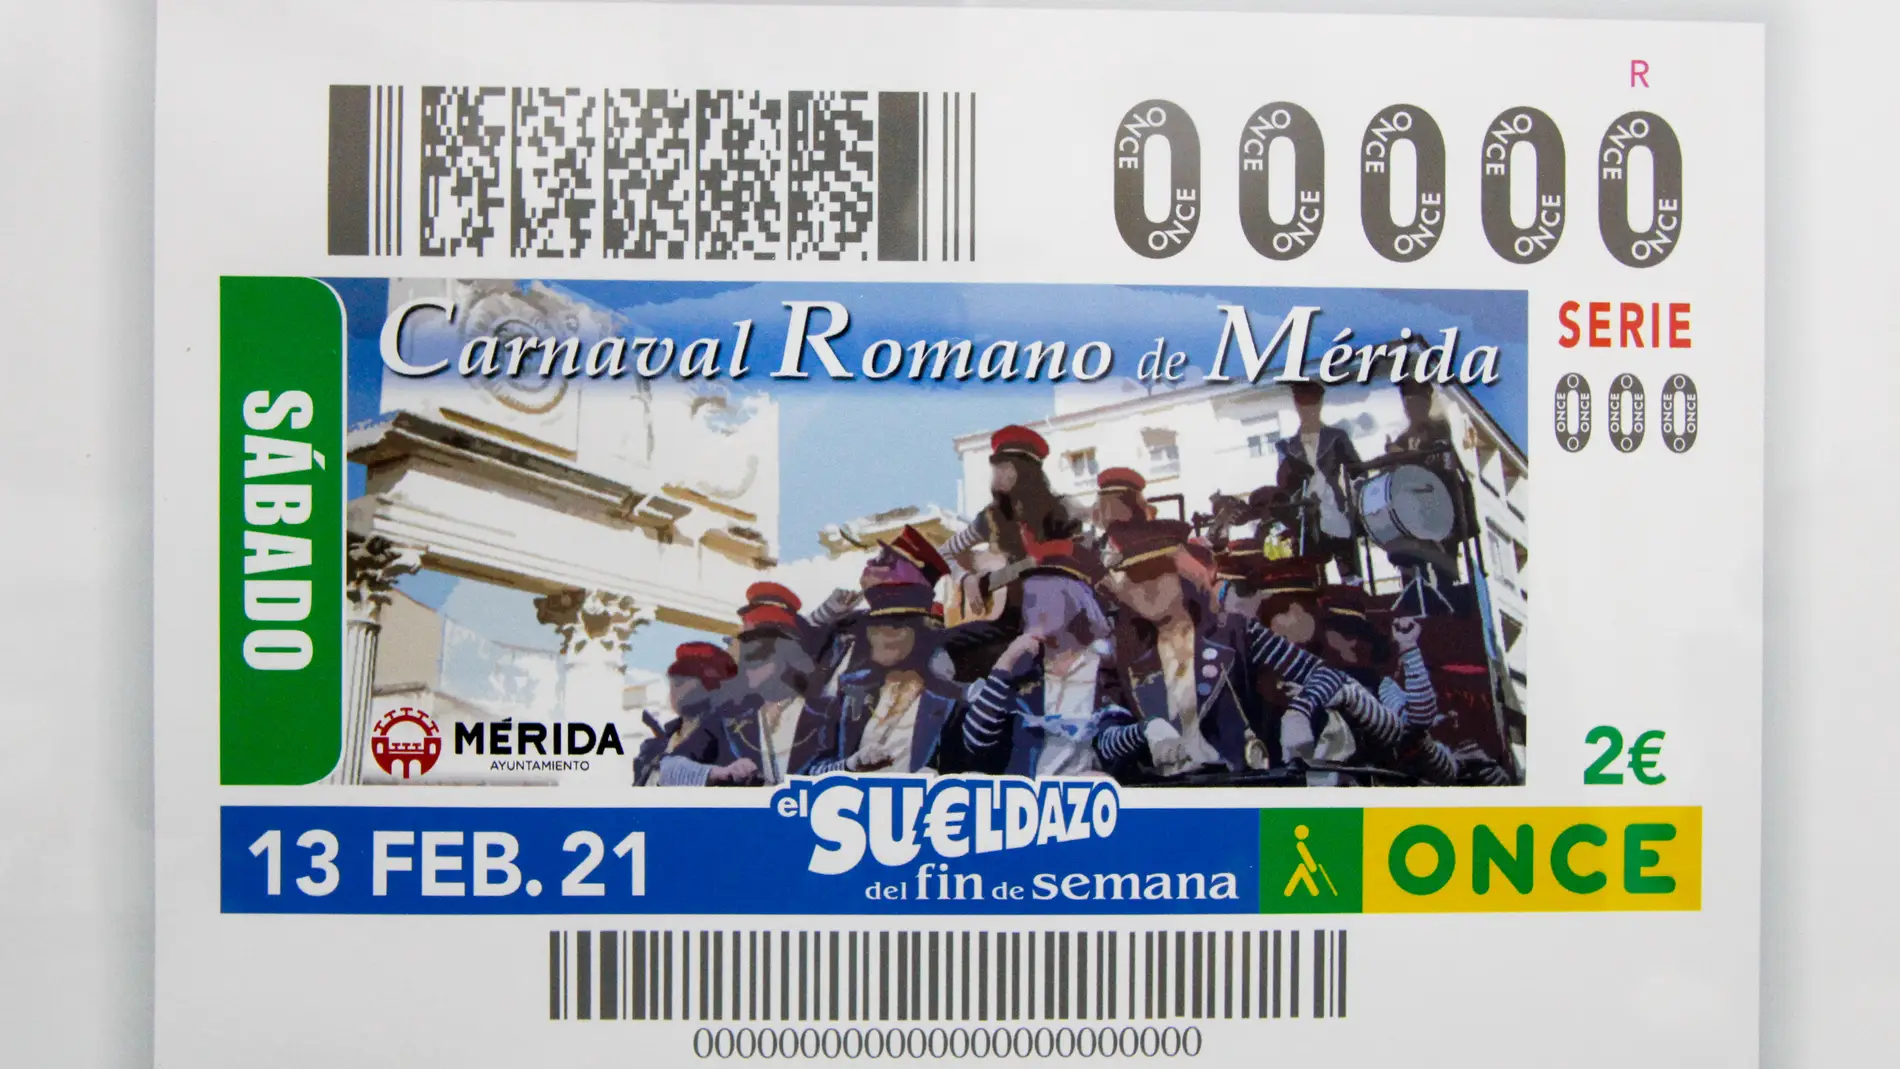 La ONCE dedica su cupón del sábado 13 de febrero al Carnaval Romano de Mérida